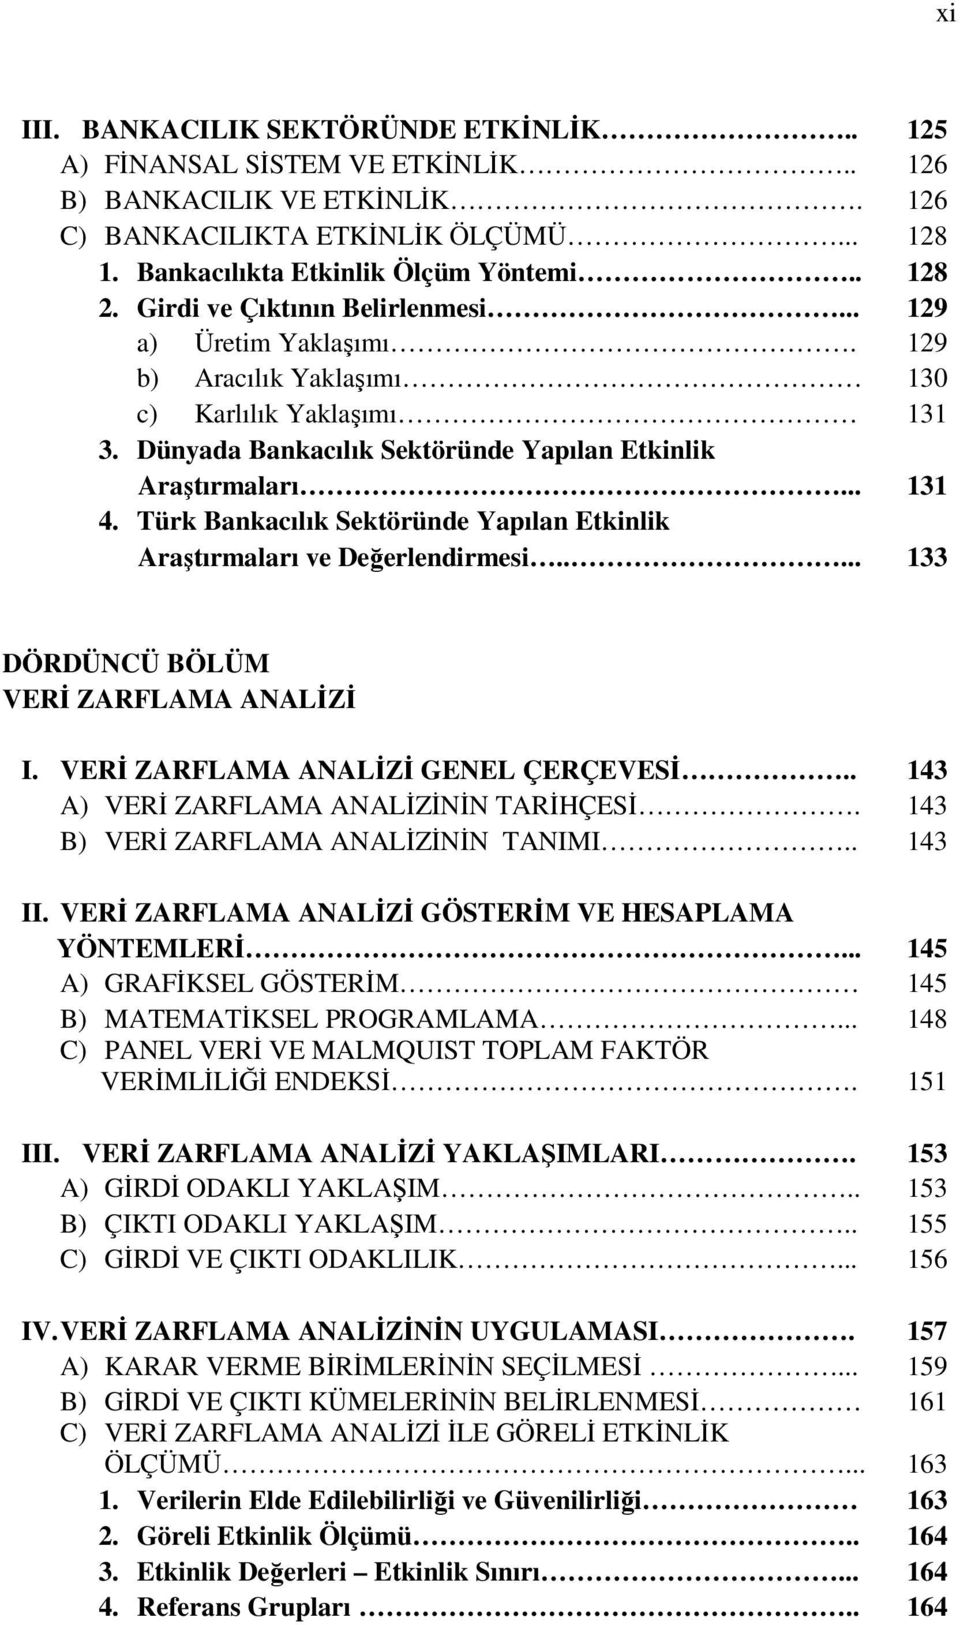 Türk Bankacılık Sektöründe Yapılan Etkinlik Araştırmaları ve Değerlendirmesi..... 133 DÖRDÜNCÜ BÖLÜM VERİ ZARFLAMA ANALİZİ I. VERİ ZARFLAMA ANALİZİ GENEL ÇERÇEVESİ.